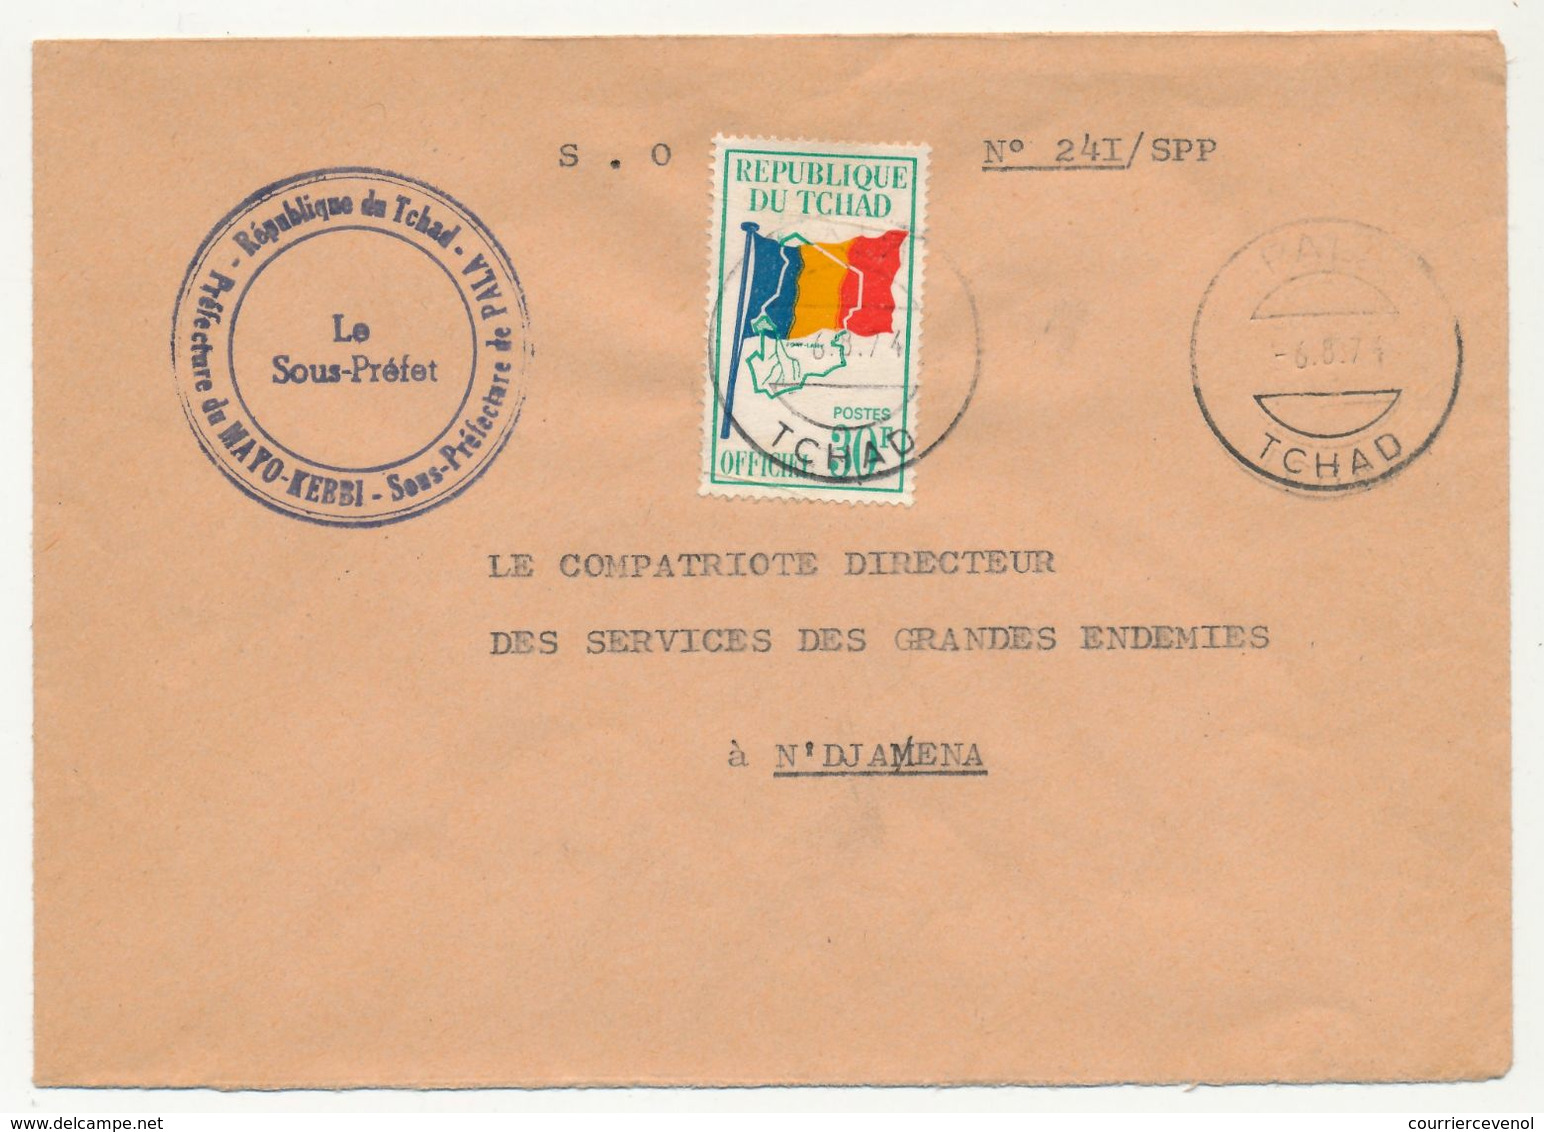 TCHAD - Env. Affr Timbre Officiel 30F - République Du Tchad - Préfecture Du Mayo-Kerbi Sous Préfecture De Pala 1974 - Chad (1960-...)